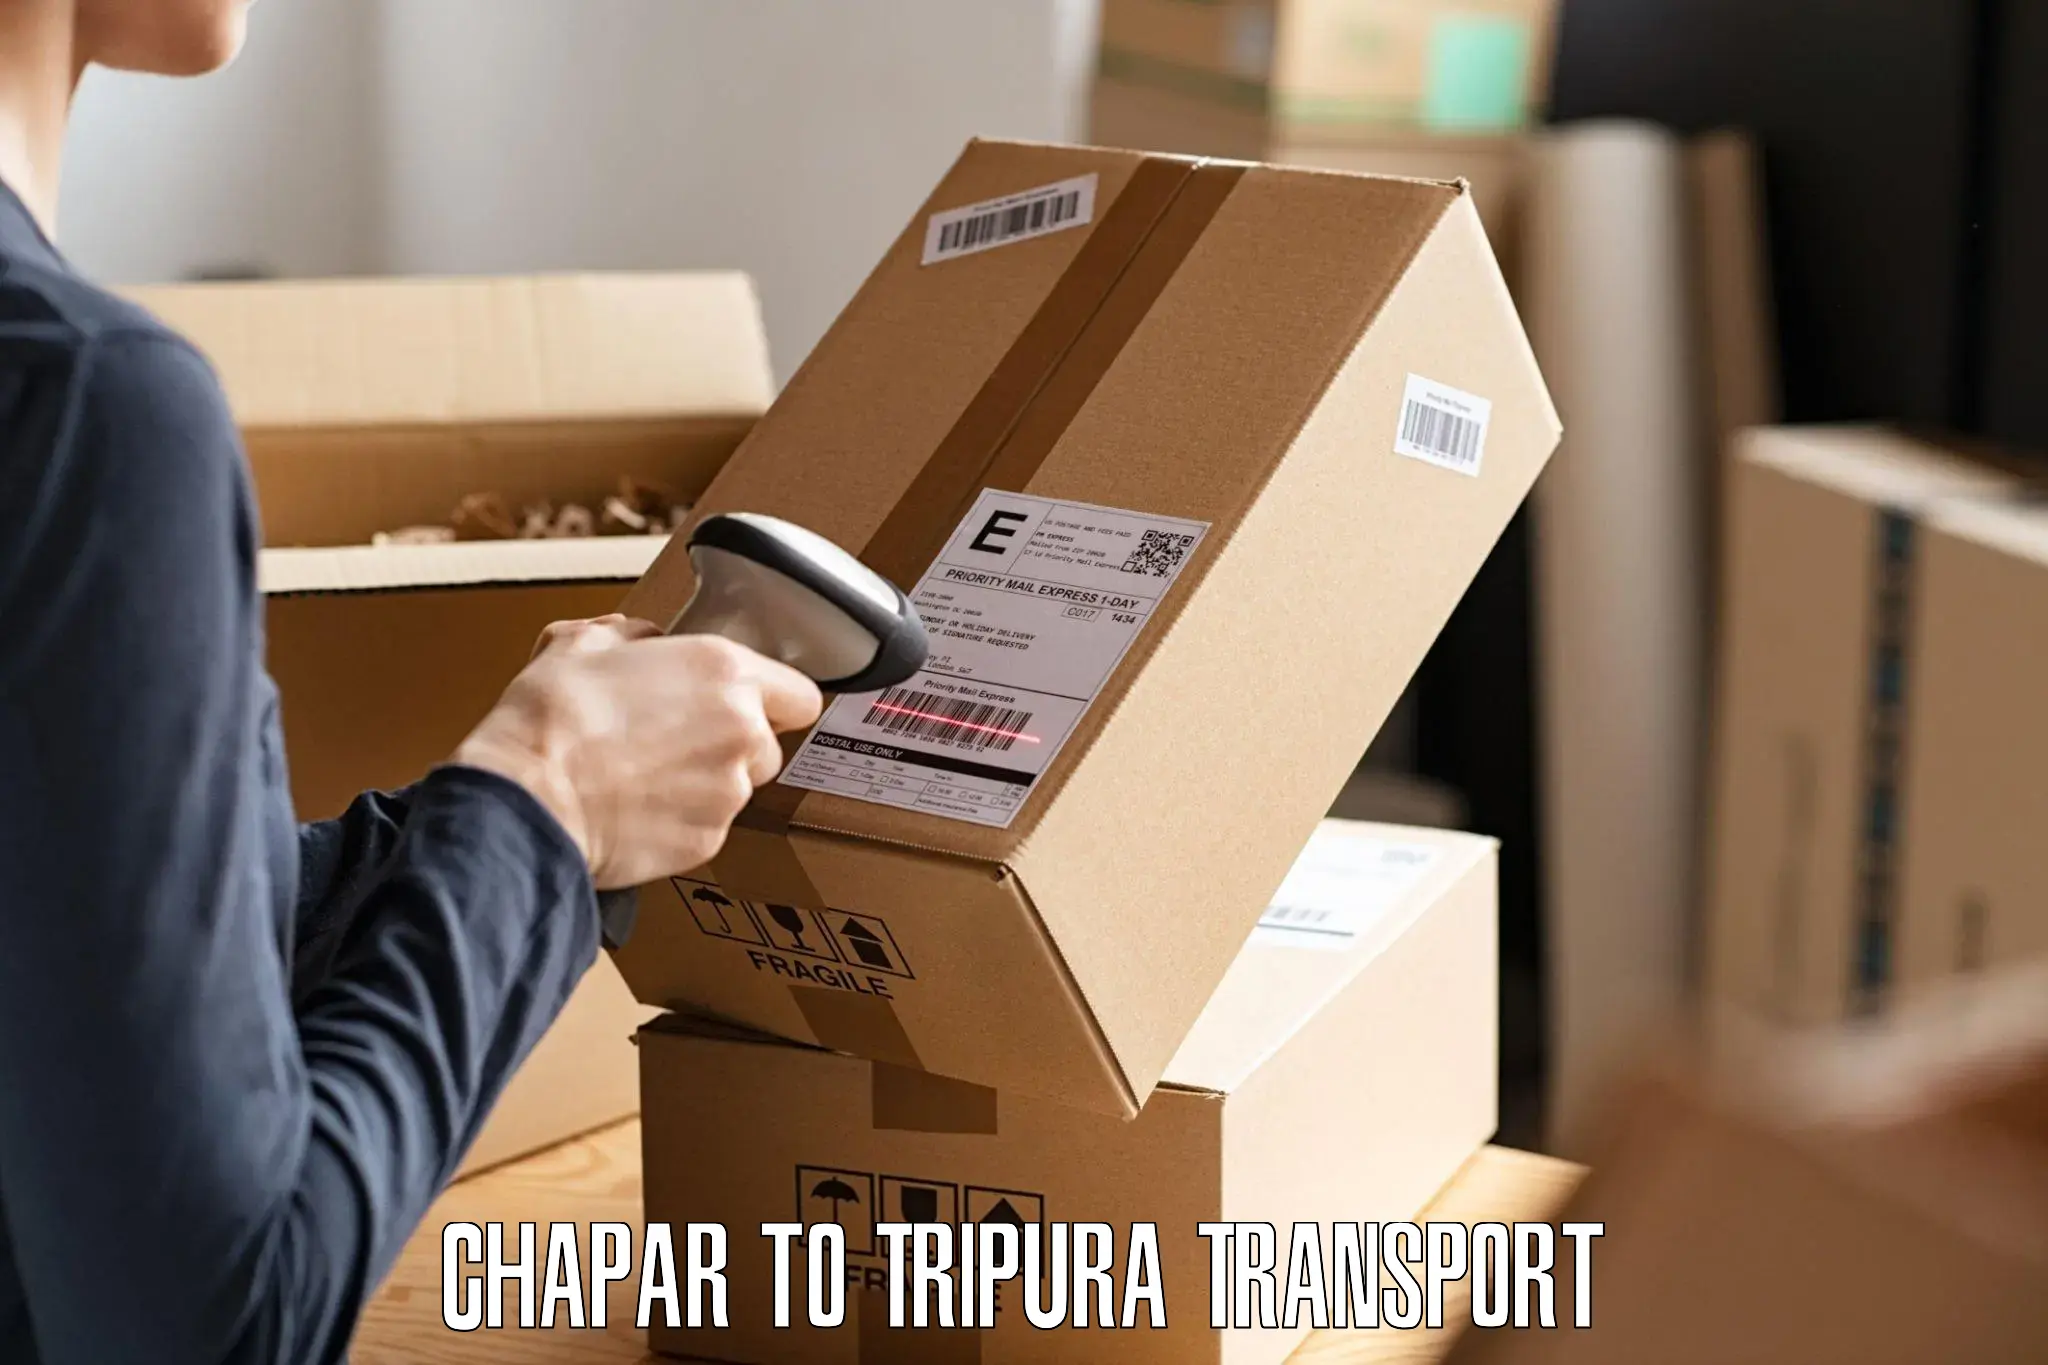 Commercial transport service Chapar to Tripura